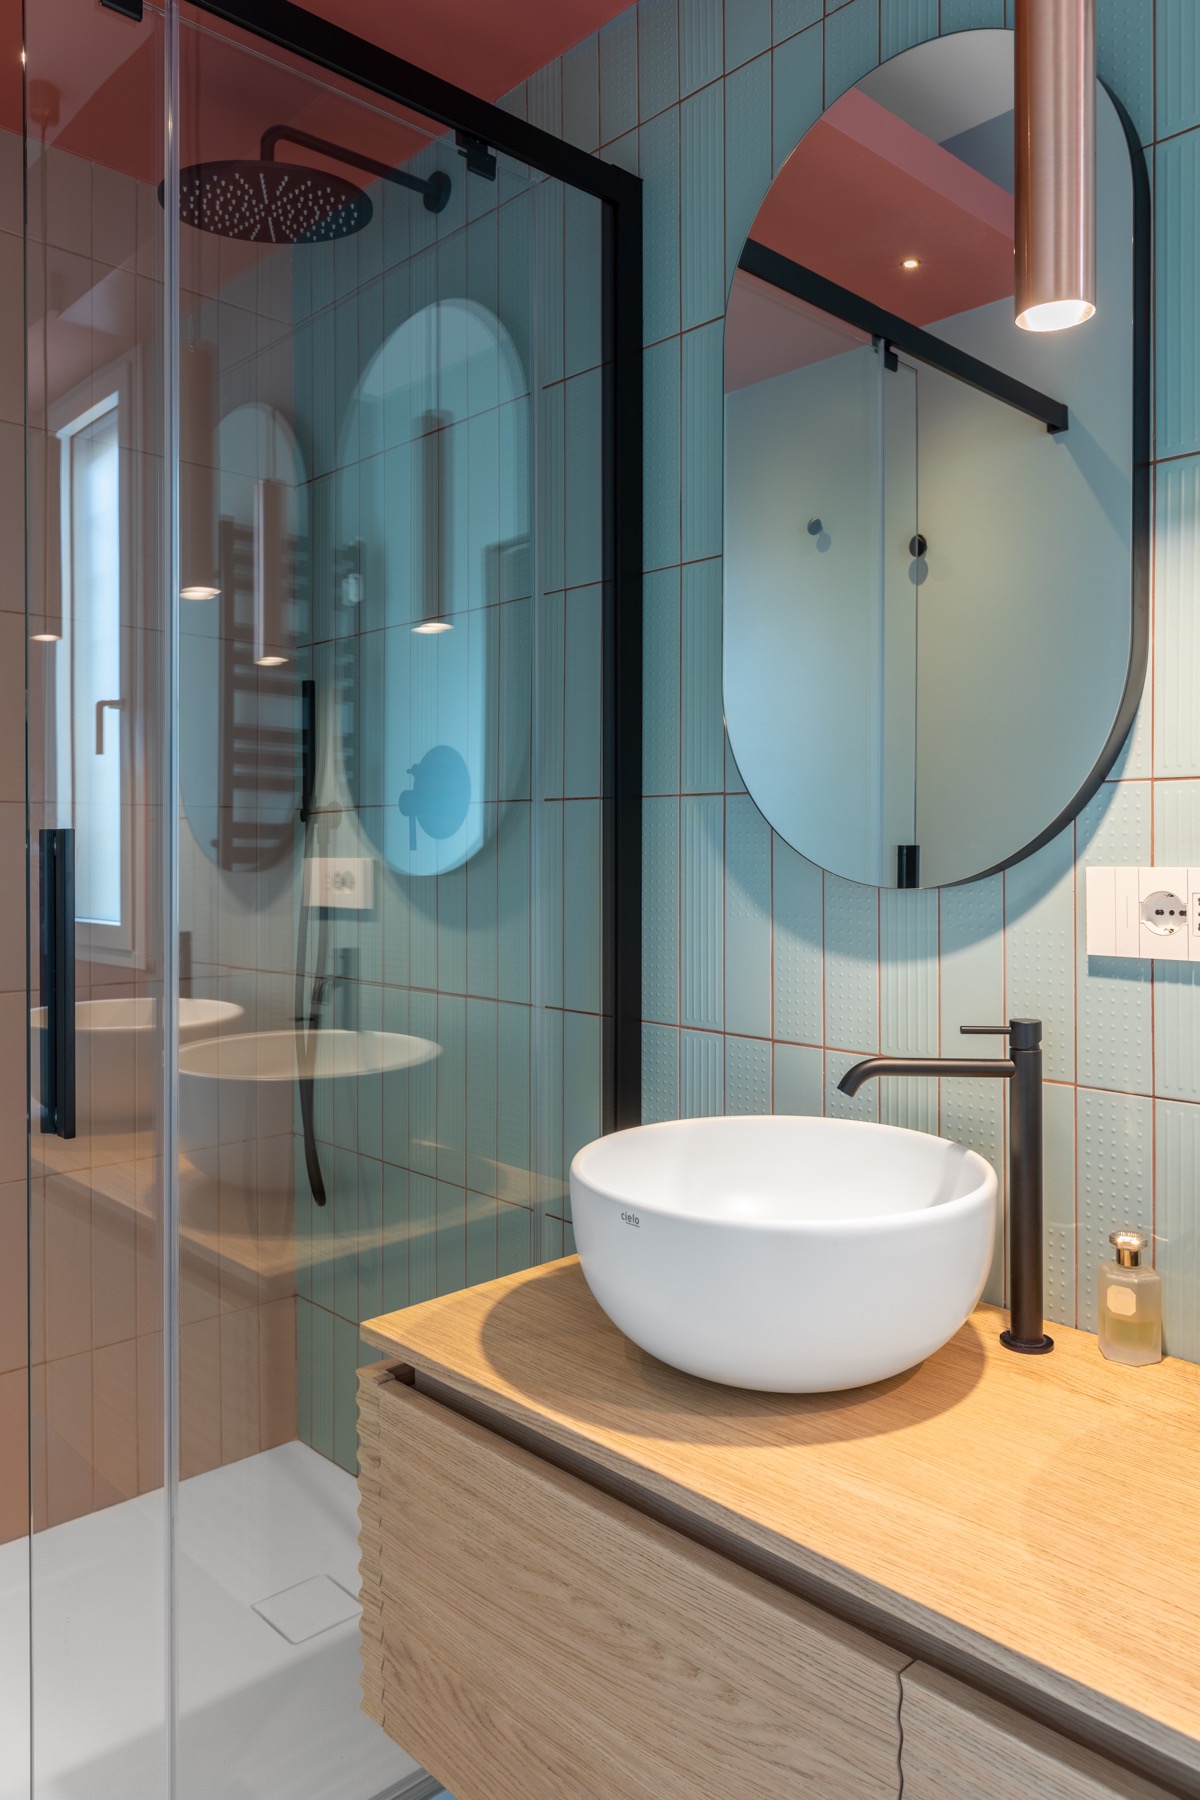 Bệ bồn rửa làm bằng gỗ sồi màu sáng tạo cảm giác thân thiện, gần gũi cho không gian phòng tắm, kết hợp hài hòa cùng hệ khung viền màu đen bắt mắt.